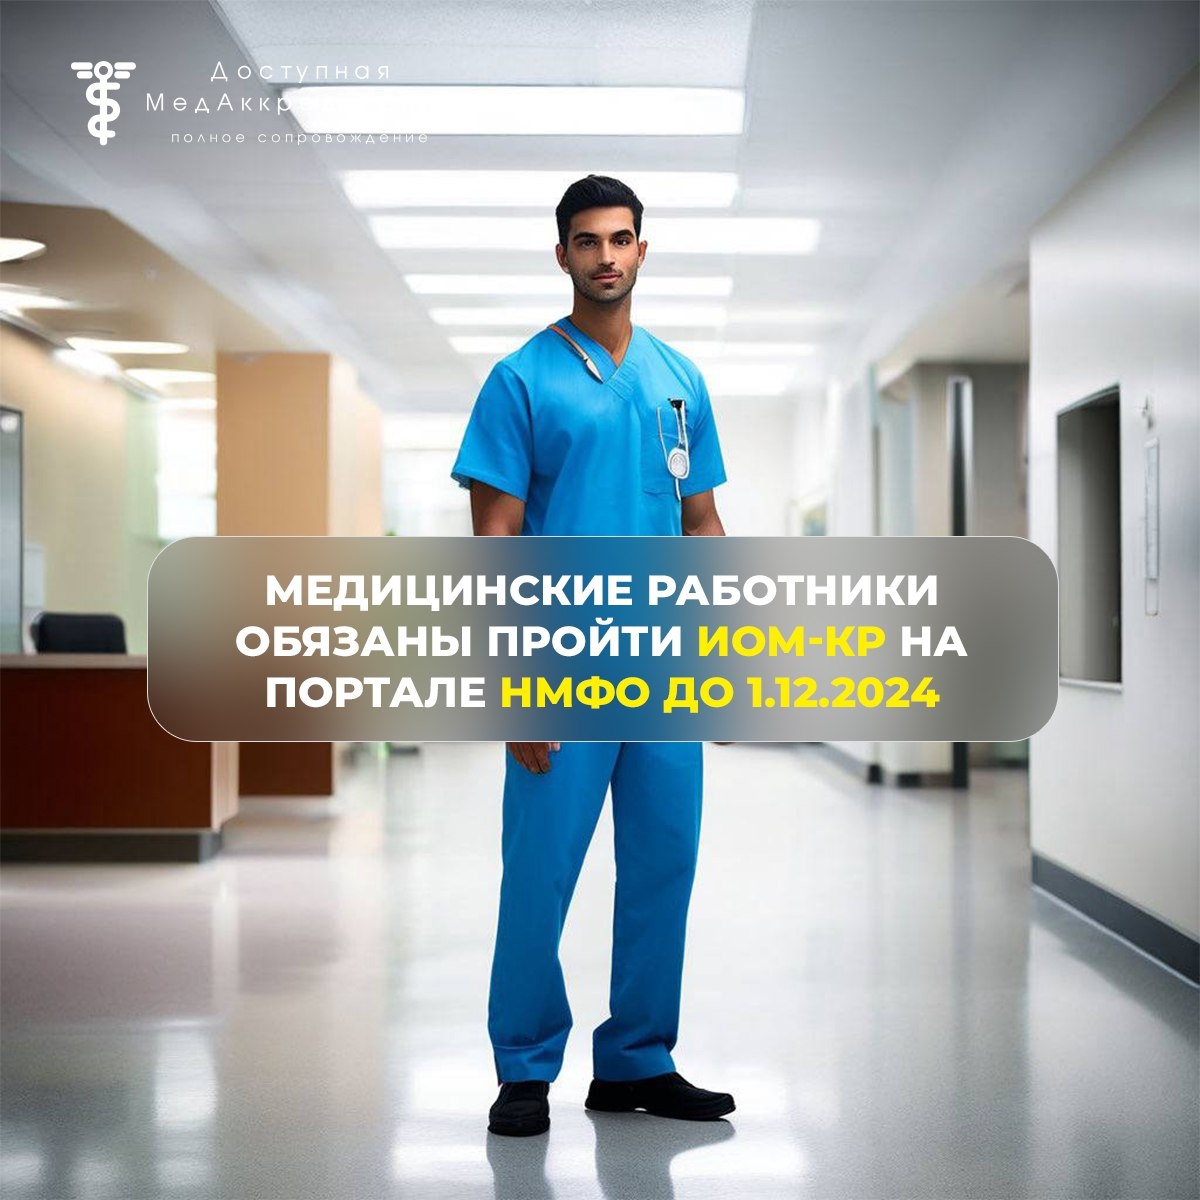 Медицинские работники обязаны пройти дополнительное обучение по клиническим рекомендациям в виде ИОМ на портале НМФО до 1.12.2024.  В соответствии с протоколом совещания от 15.05.